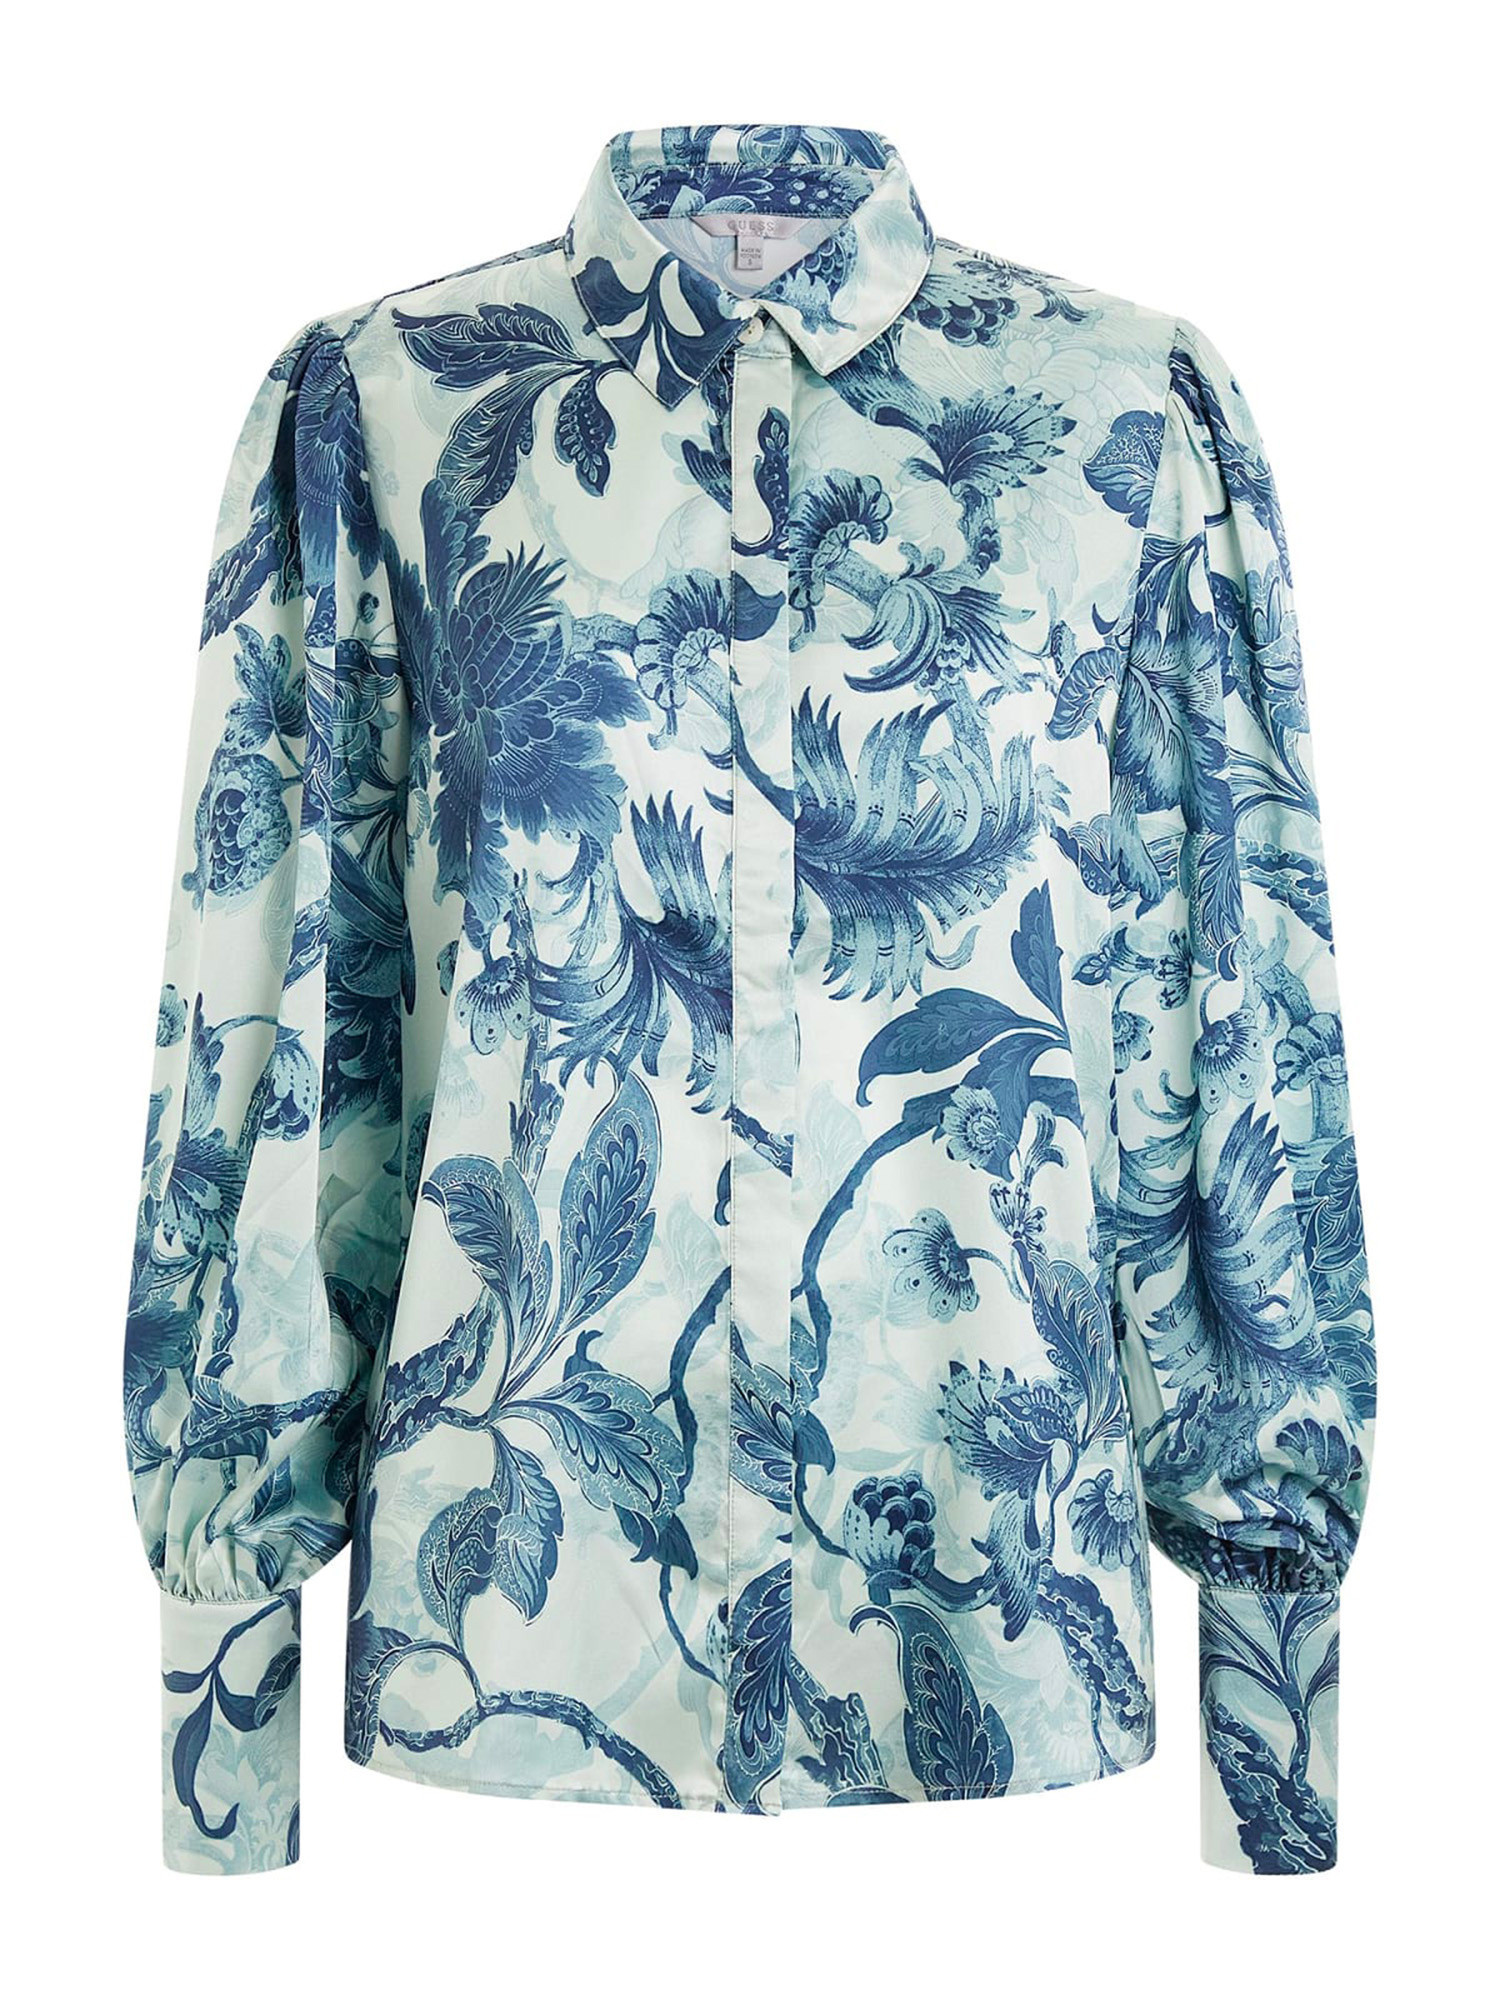 Guess - Regular fit floral print blouse, Light Blue, large image number 0